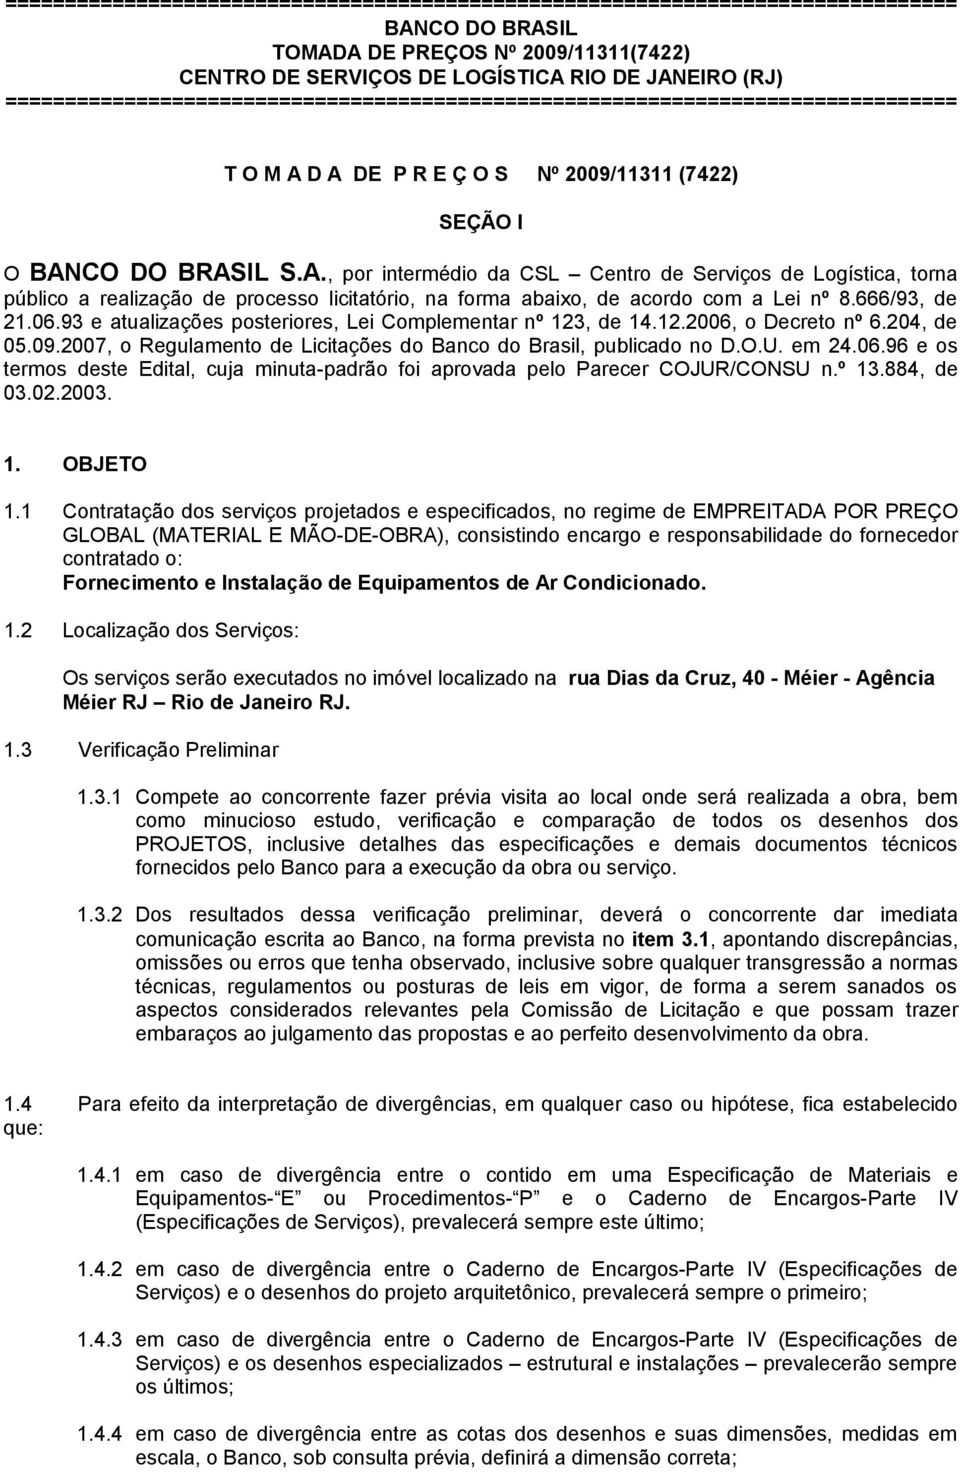 93 e atualizações posteriores, Lei Complementar nº 123, de 14.12.2006, o Decreto nº 6.204, de 05.09.2007, o Regulamento de Licitações do Banco do Brasil, publicado no D.O.U. em 24.06.96 e os termos deste Edital, cuja minuta-padrão foi aprovada pelo Parecer COJUR/CONSU n.